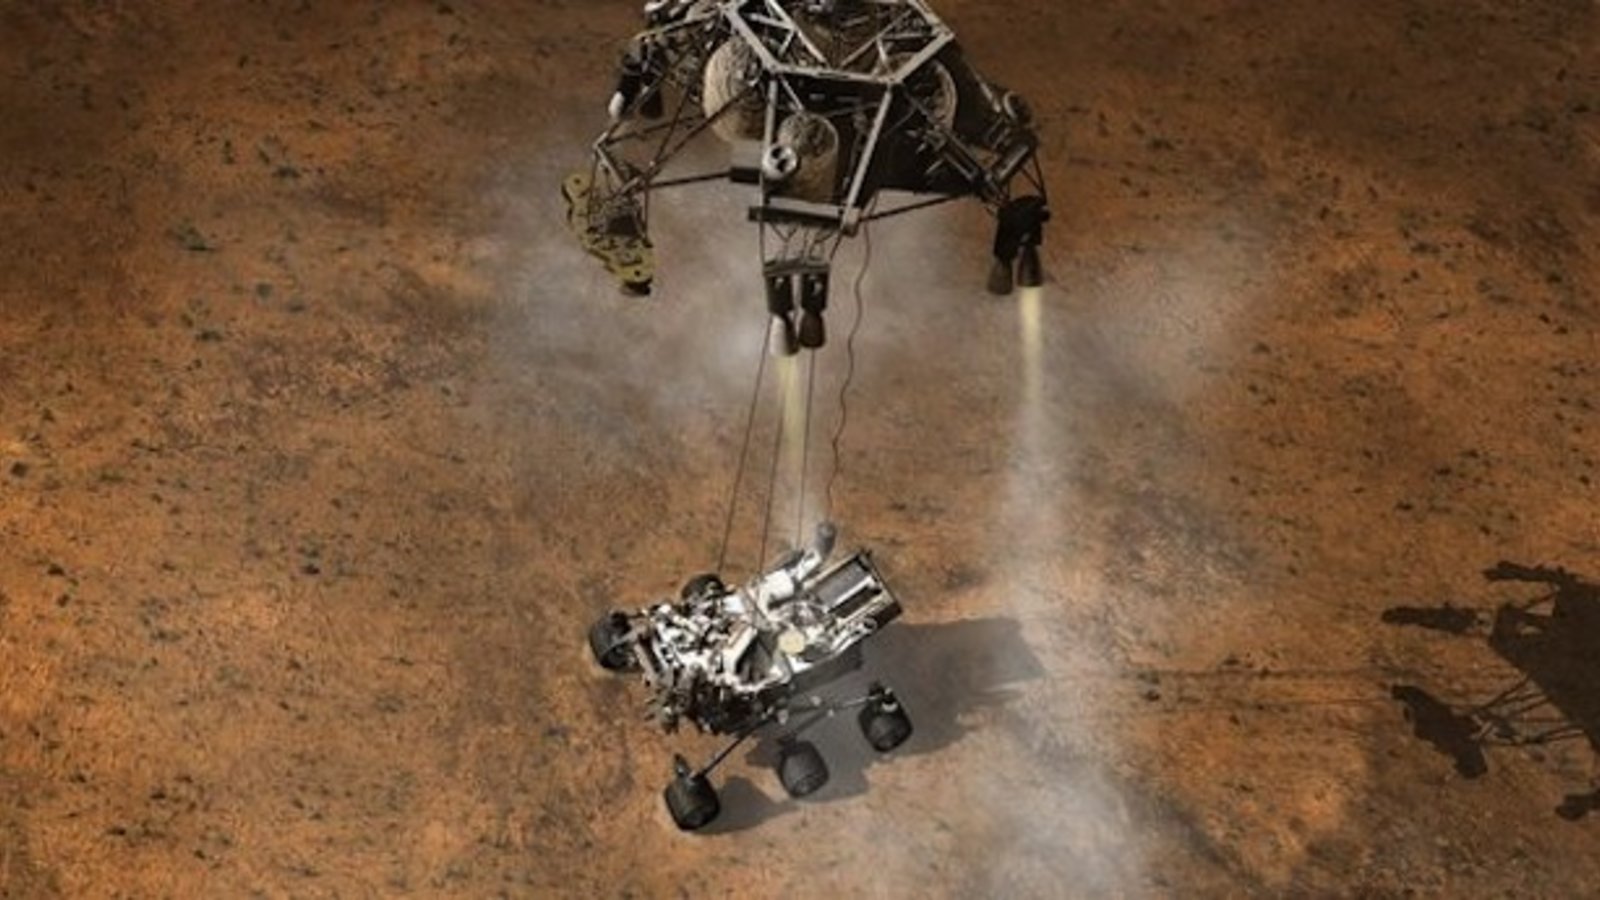 curiosity-rover-mars-landing-touchdown.jpeg